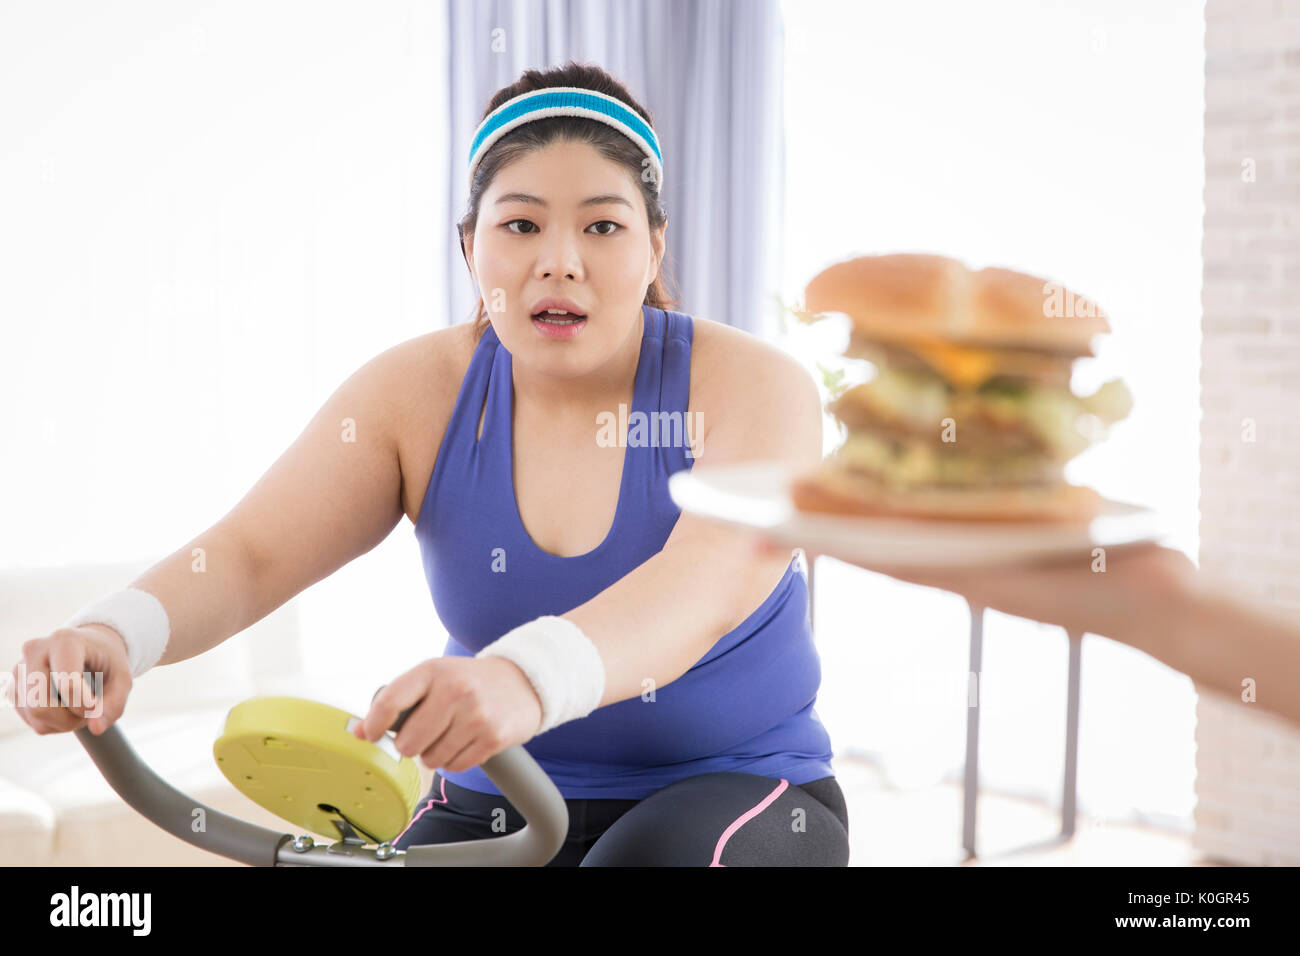 Junge fette Frau versucht schnell zu Essen - Essen während der Übung Stockfoto